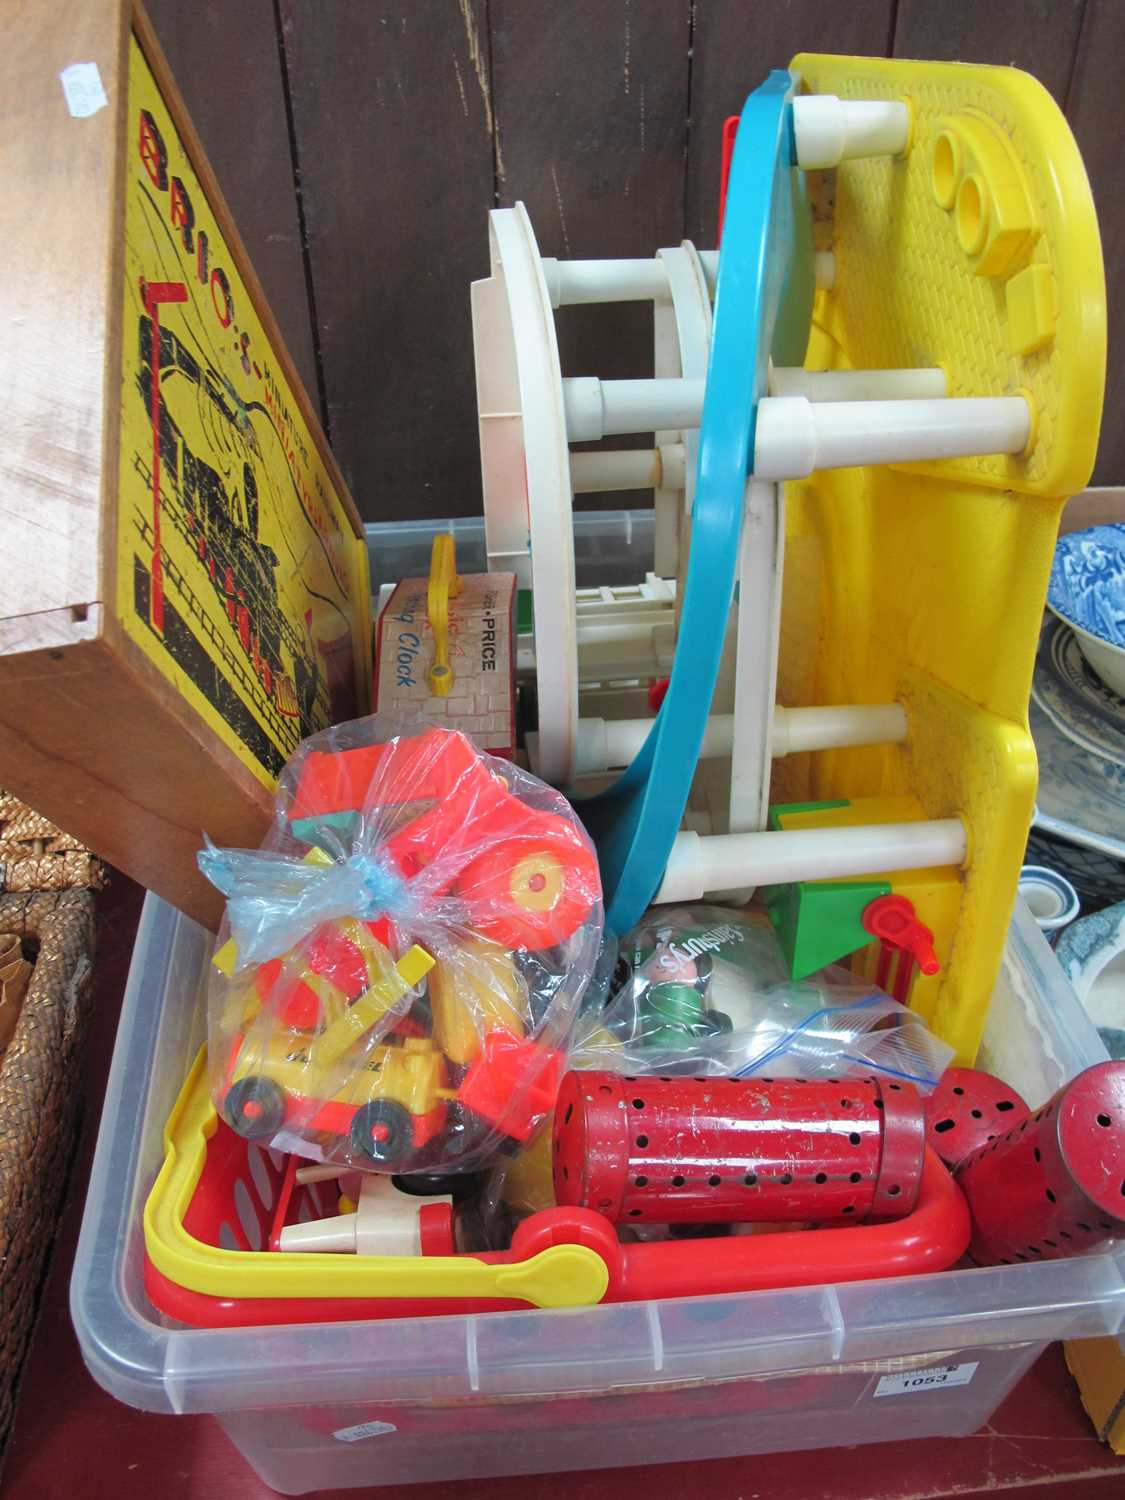 Meccano in Brio's Miniature Railway Box, Fisher Price teaching clock, Play Family garage, etc.